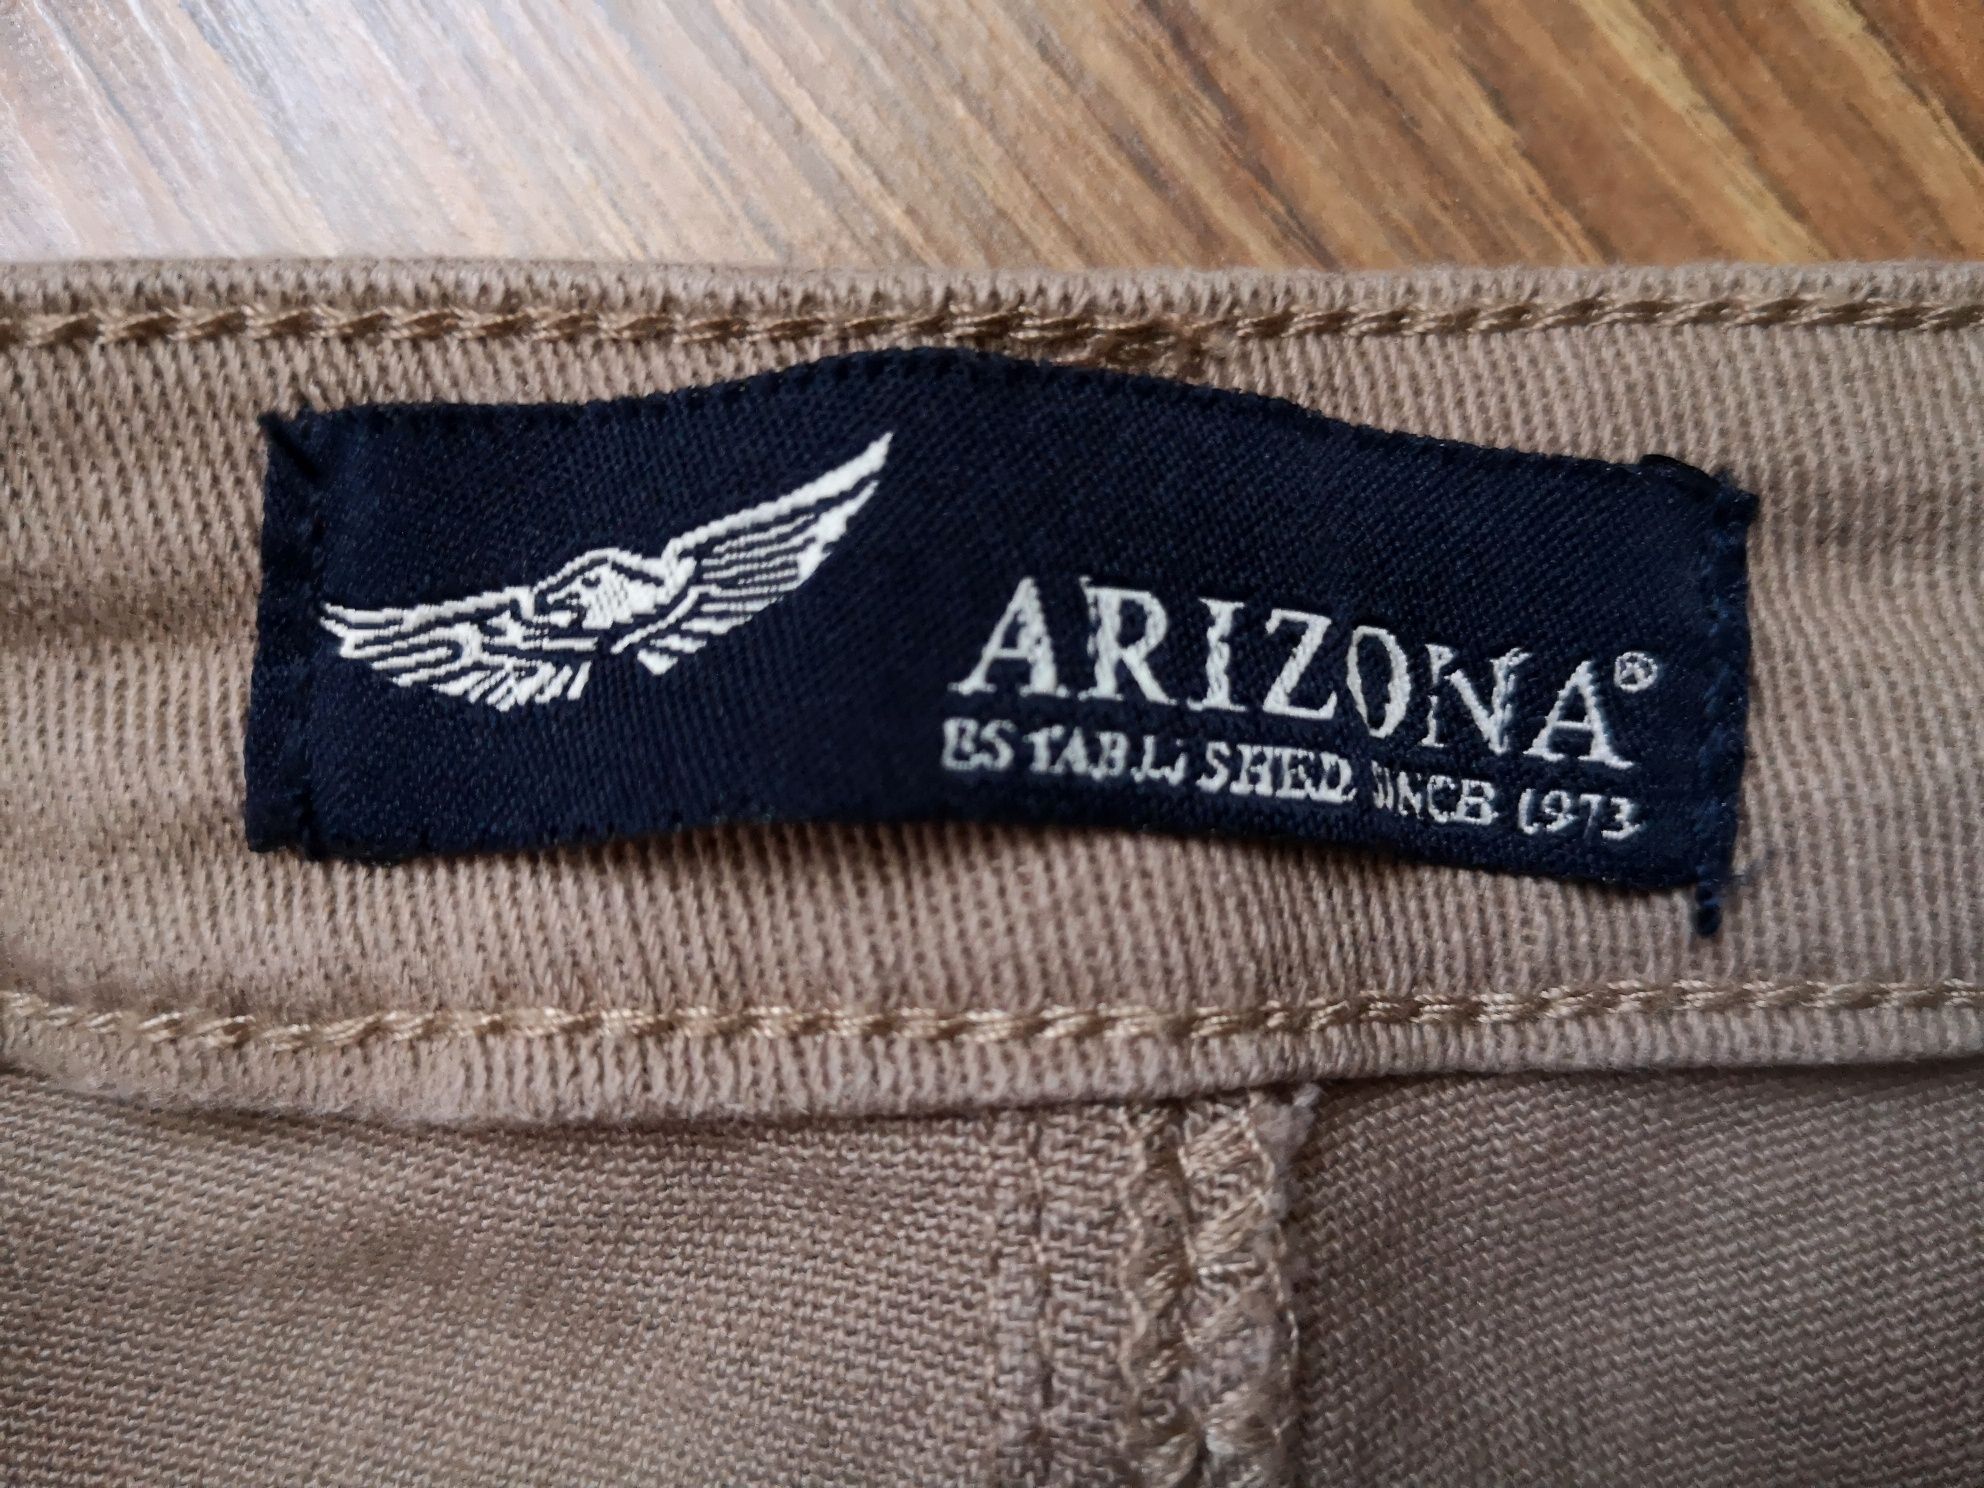 Arizona spodnie roz 36